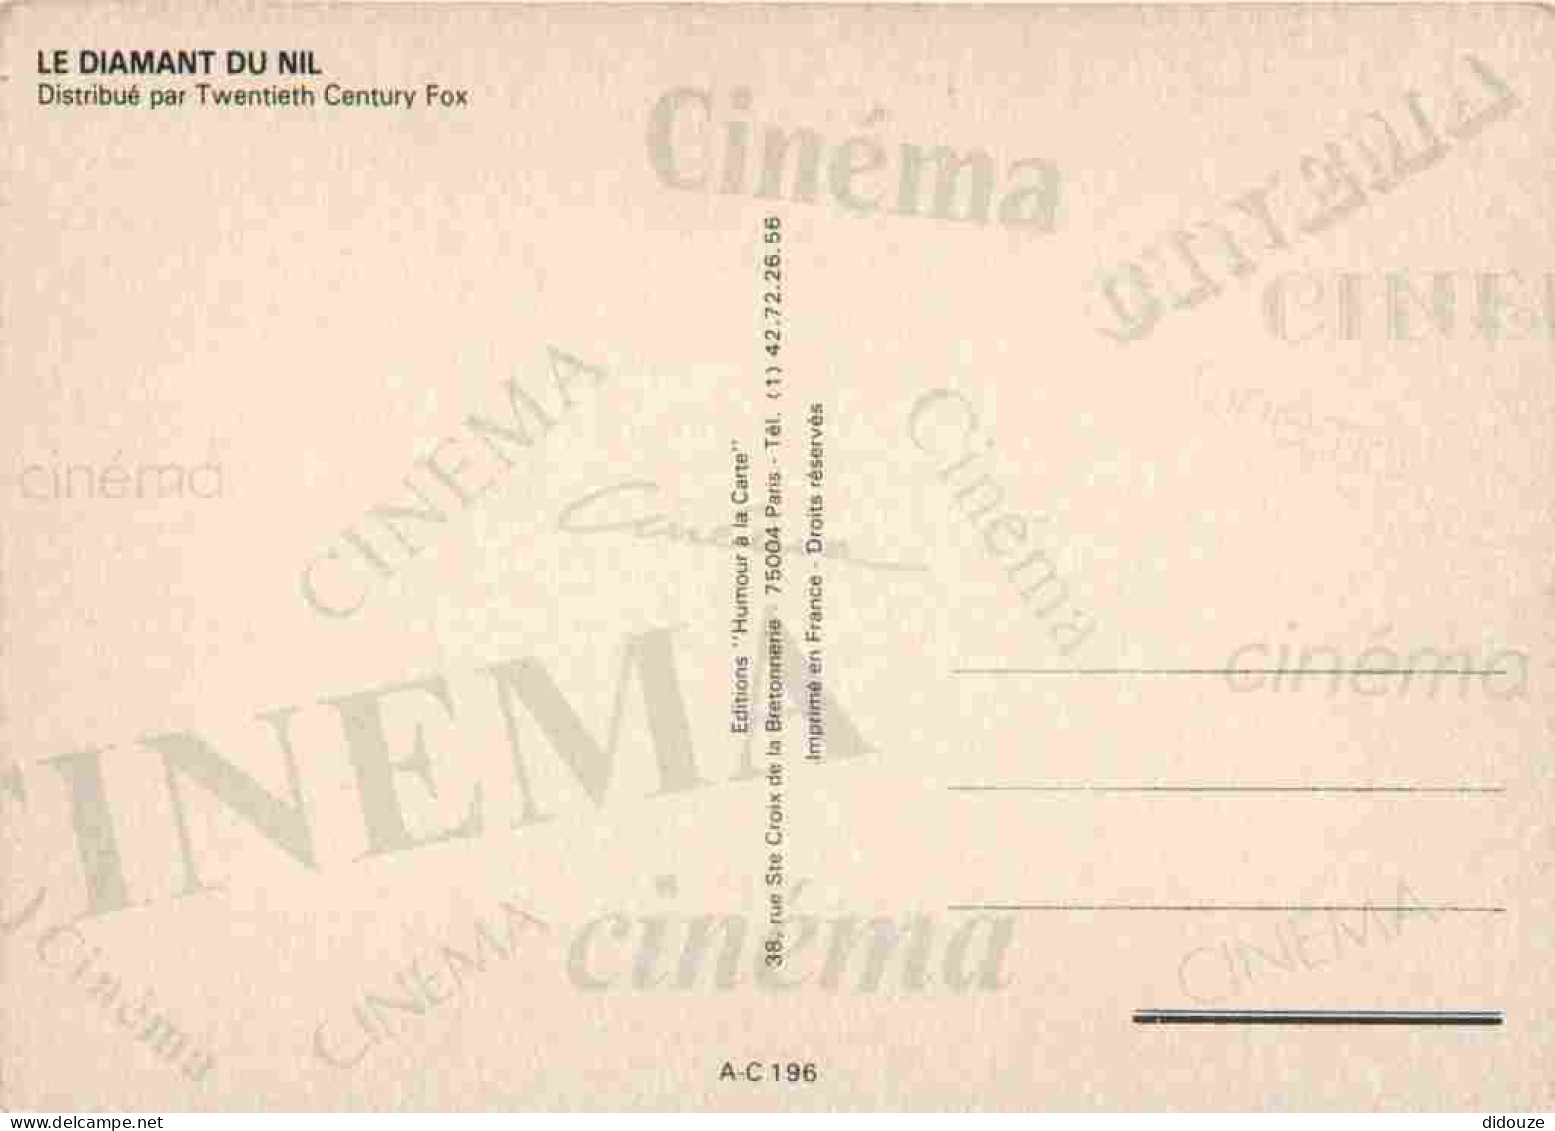 Cinema - Affiche De Film - Le Diamant Du Nil - Michael Douglas - Kathleen Turner - Danny DeVito - CPM - Carte Neuve - Vo - Affiches Sur Carte